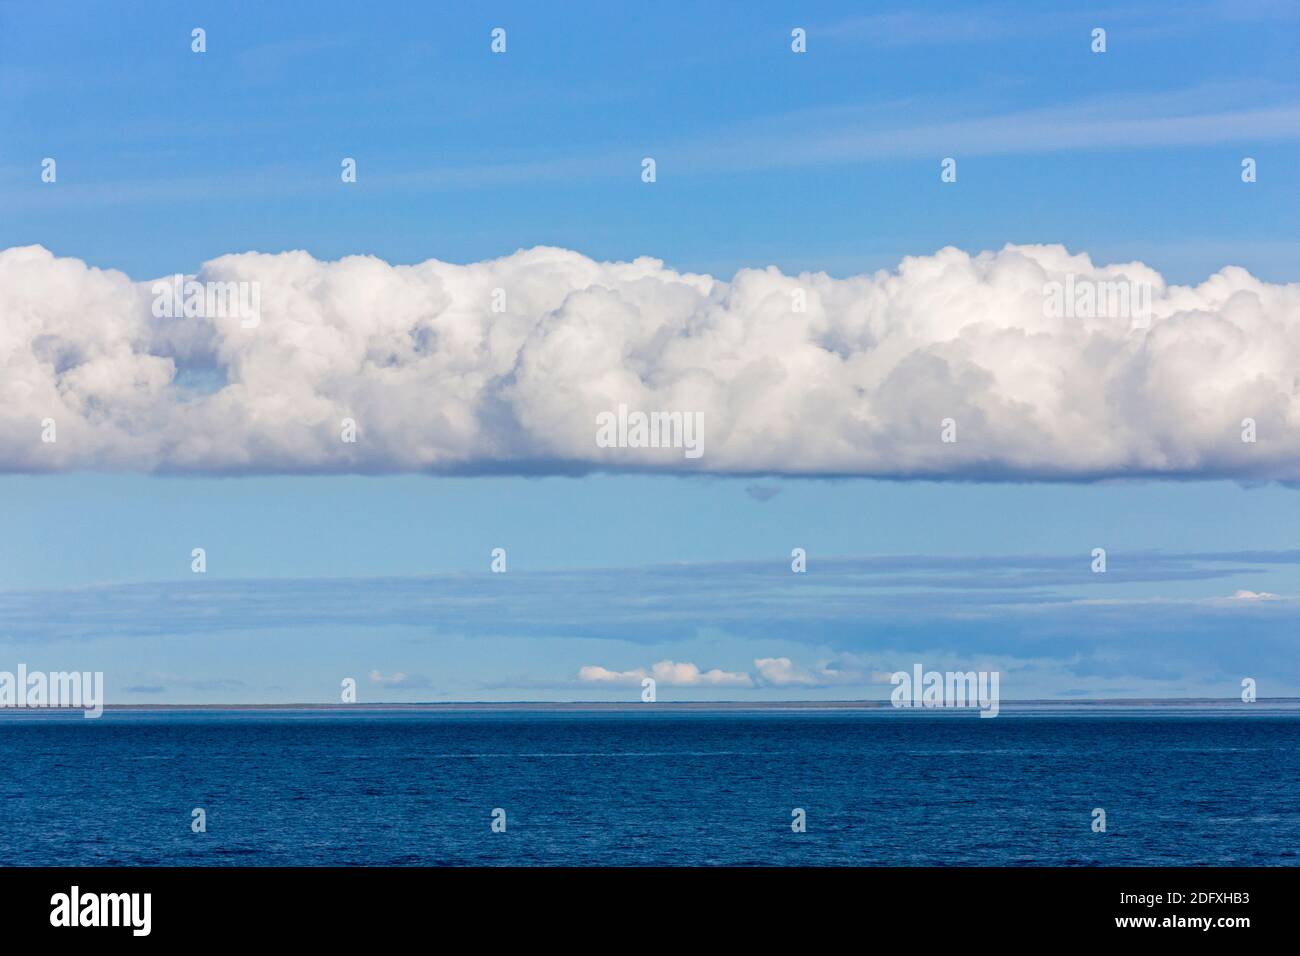 Nuages au-dessus de l'océan, Cap Onman, mer de Chukchi, Russie extrême-Orient Banque D'Images